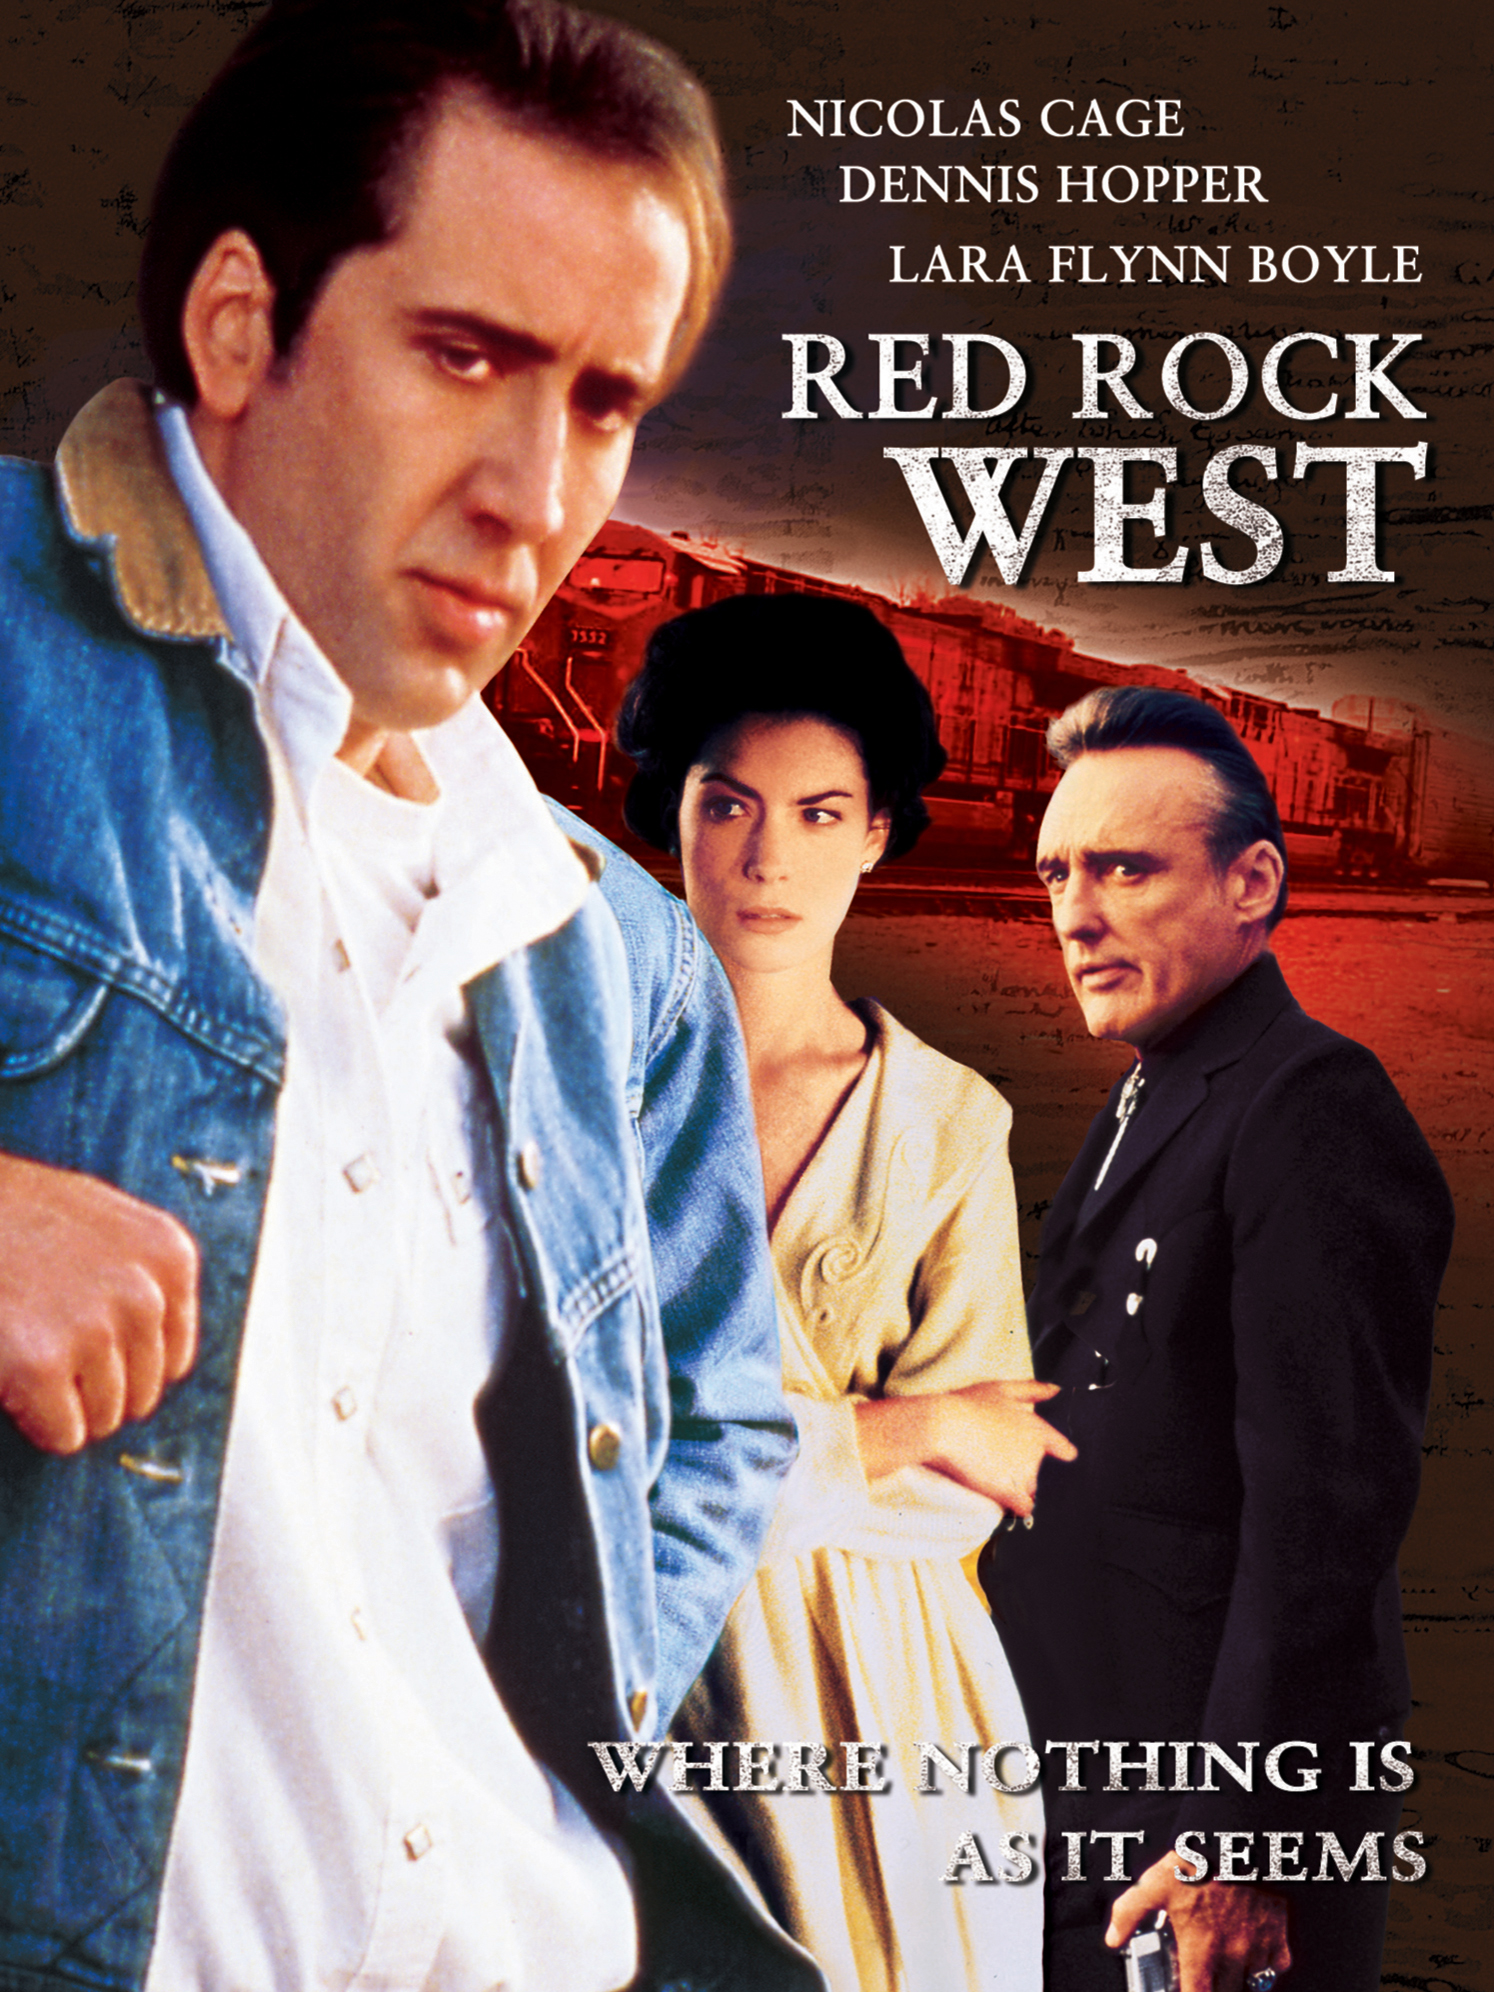 Придорожное заведение 1992. Red Rock West 1992. Придорожное заведение 1993. Николас Кейдж придорожное заведение. Red Rock West 1993 poster.